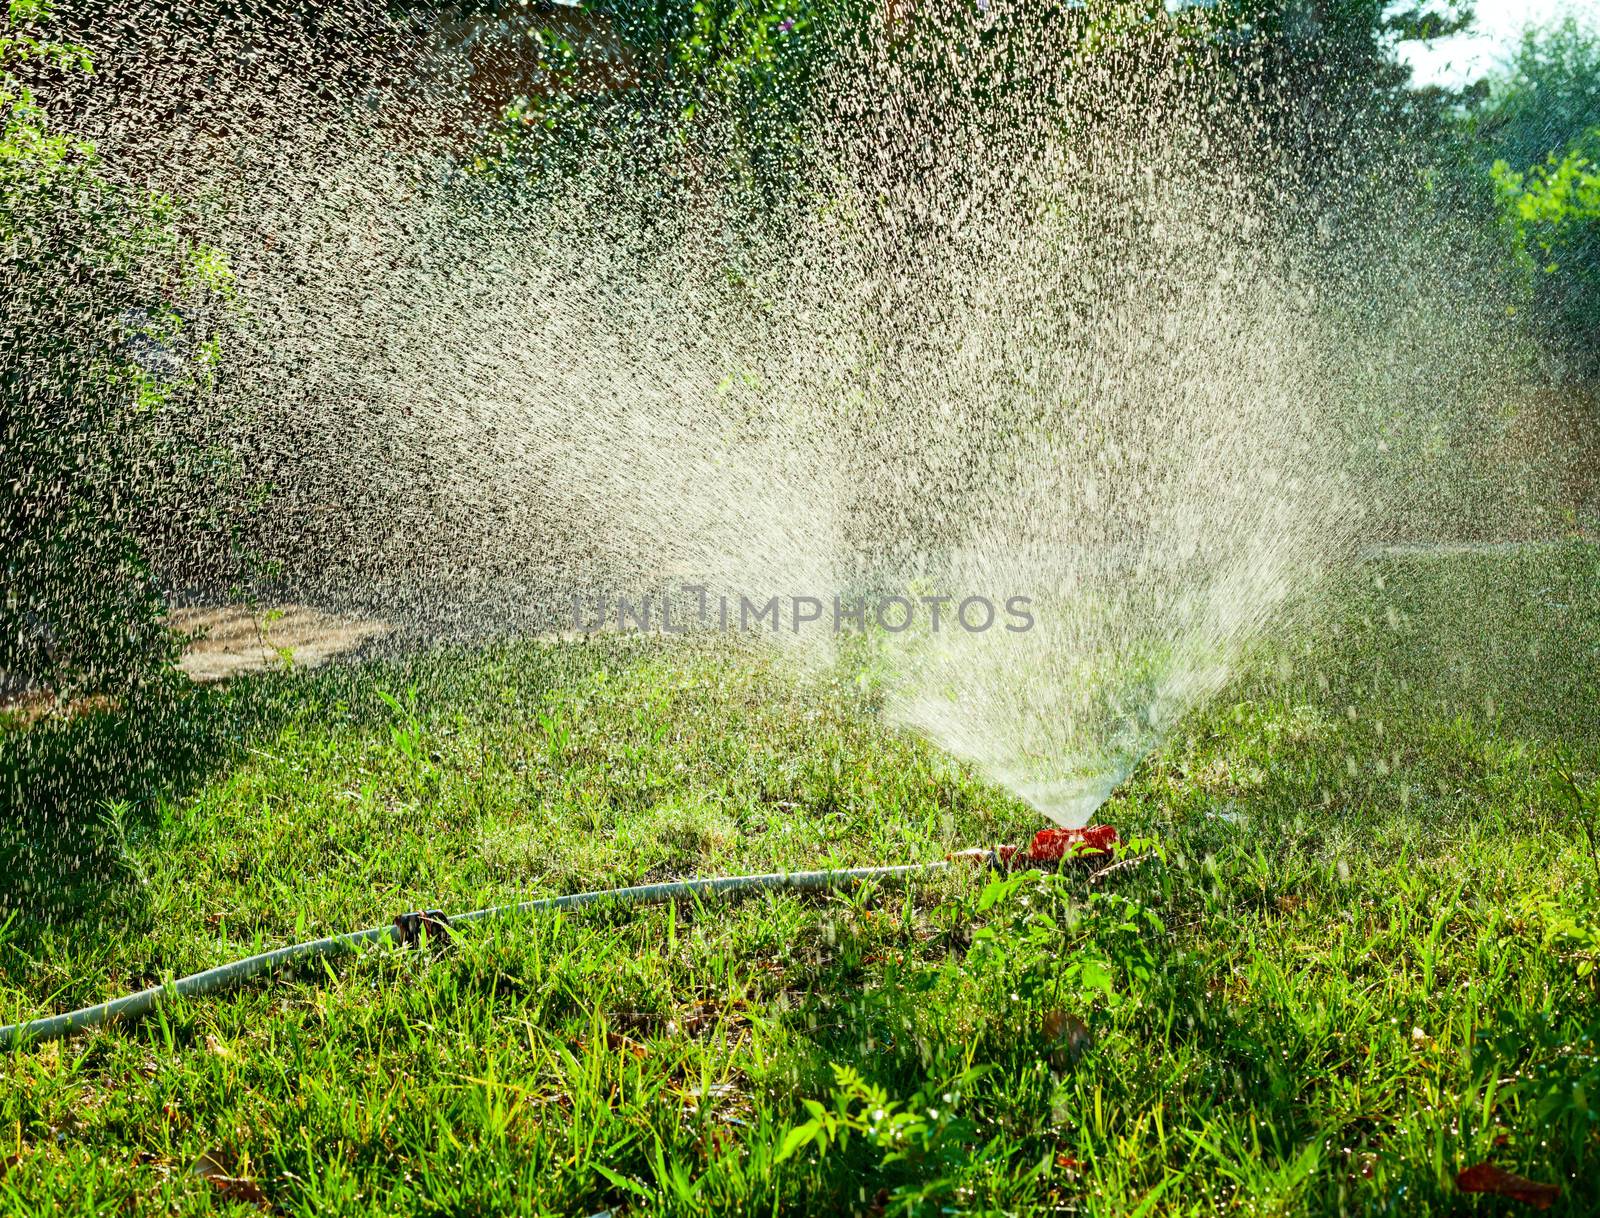 Home garden sprinkler in action